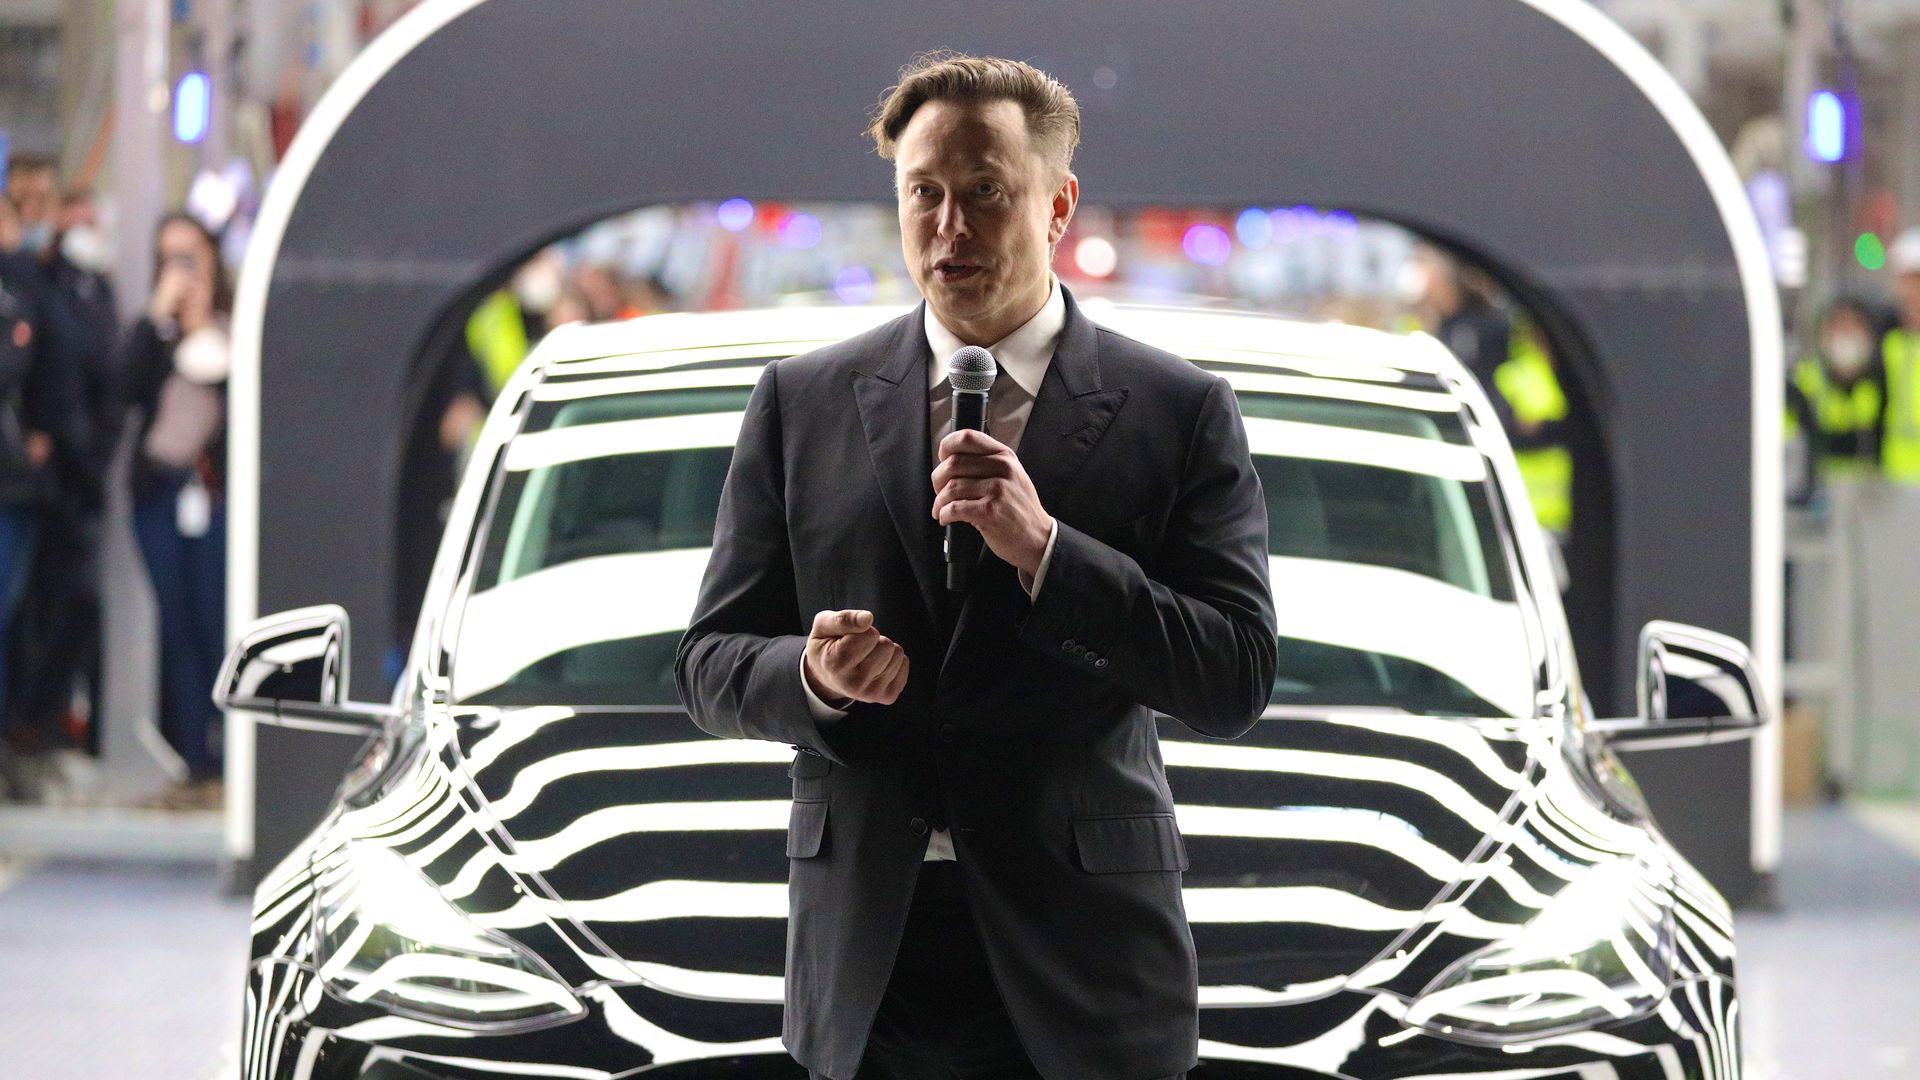 Elon Musk in Berlin on March 22.